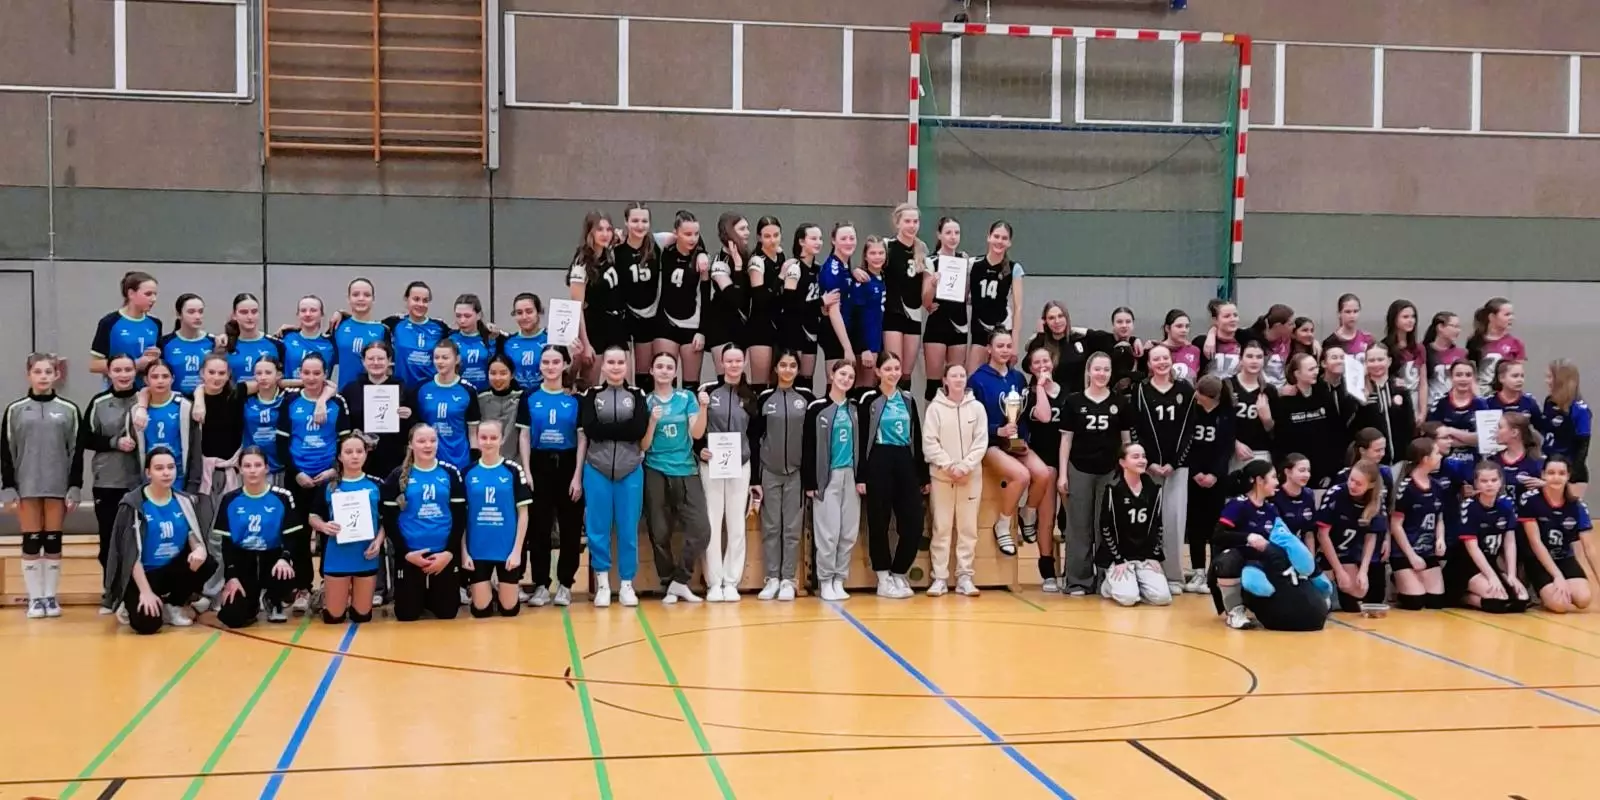 Siegerehrung bei der Hamburger U16-Meisterschaft: Auf dem Foto sind alle teilnehmenden Teams zu sehen, links in den blauen Trikots die drei VTH-Teams. Foto: VTH